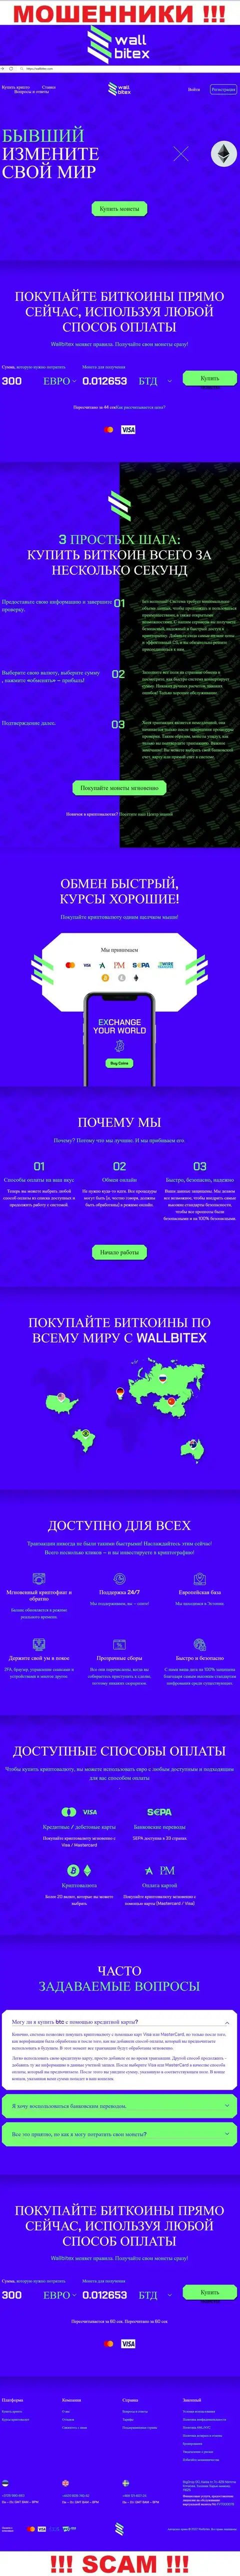 WallBitex Com - это официальный интернет-сервис противозаконно действующей организации WallBitex